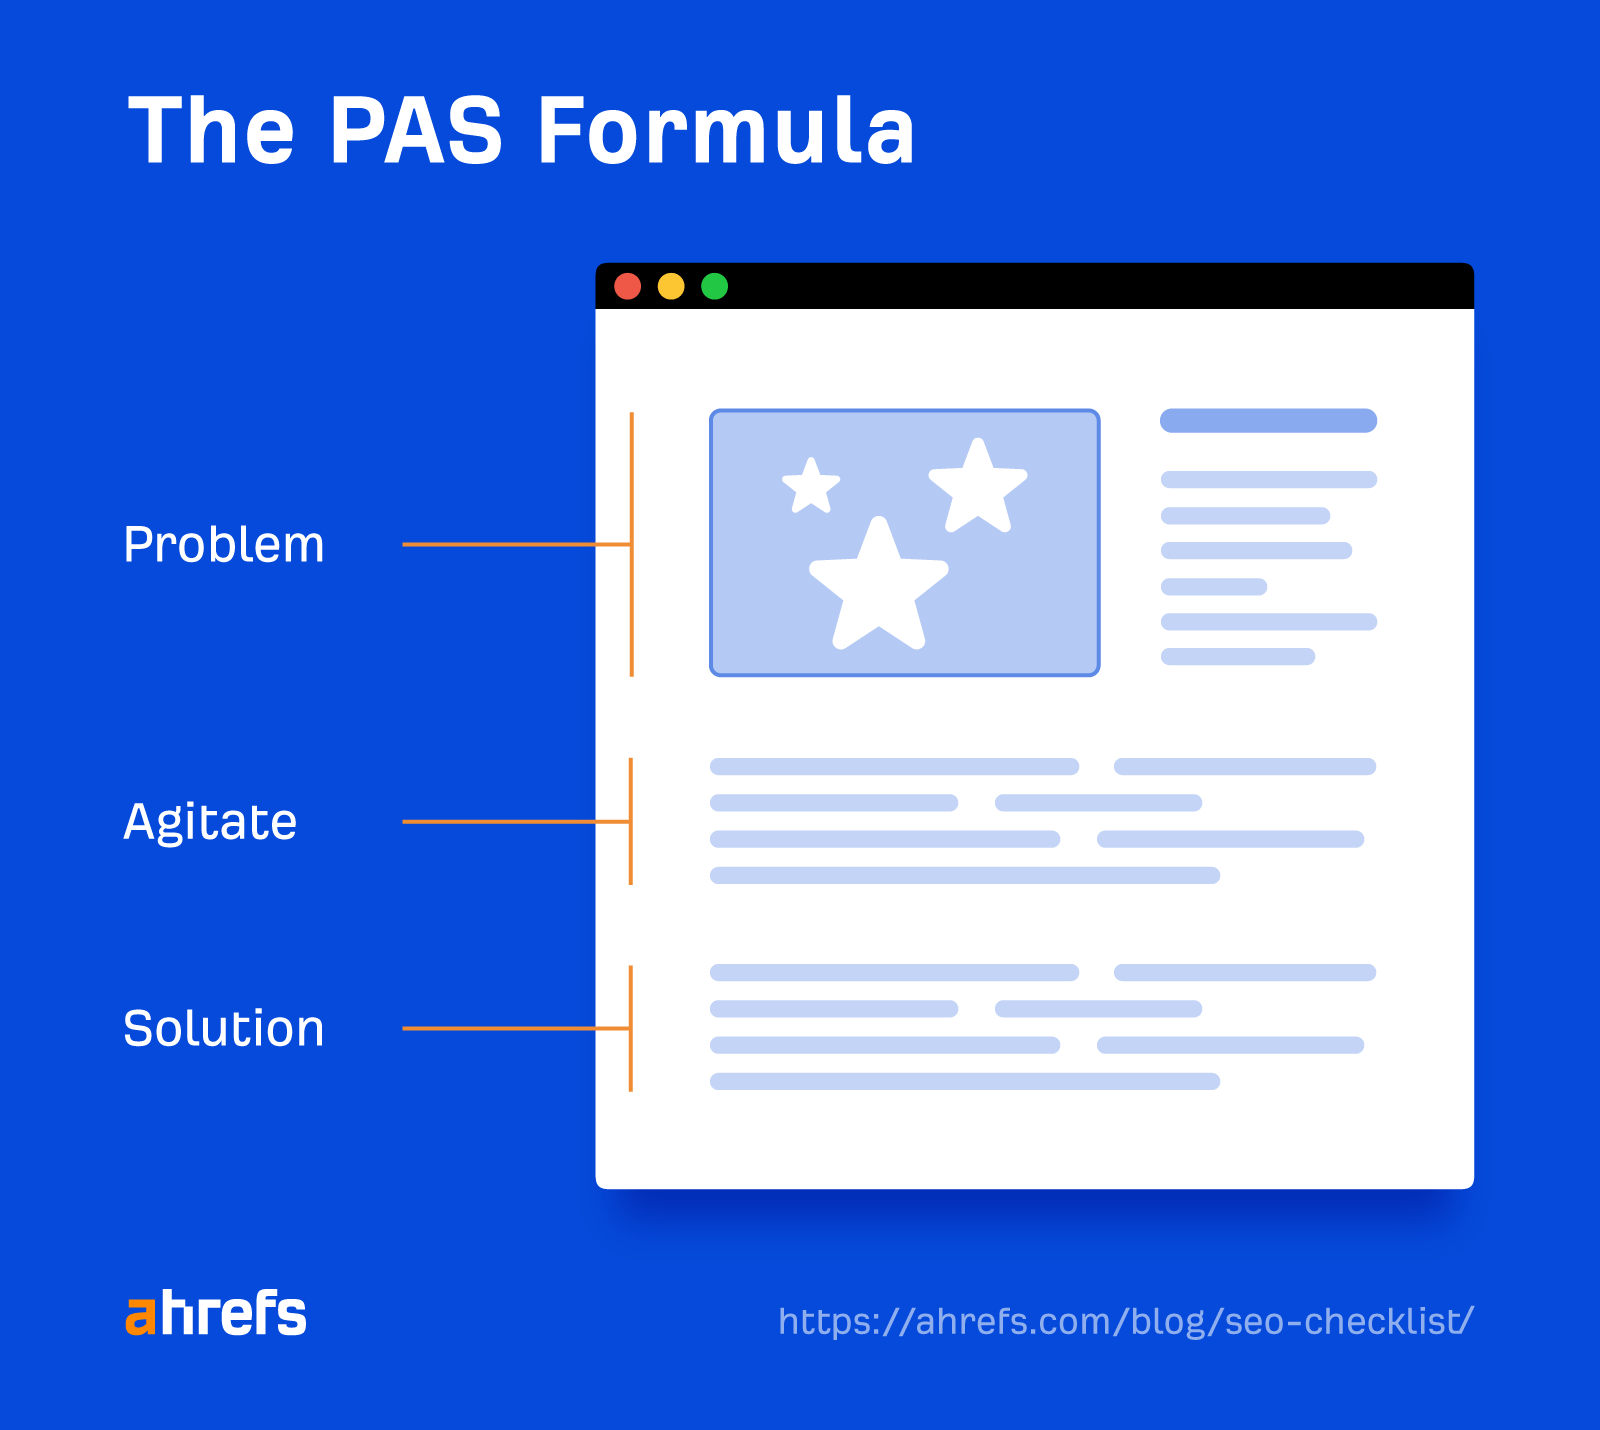 The PAS formula